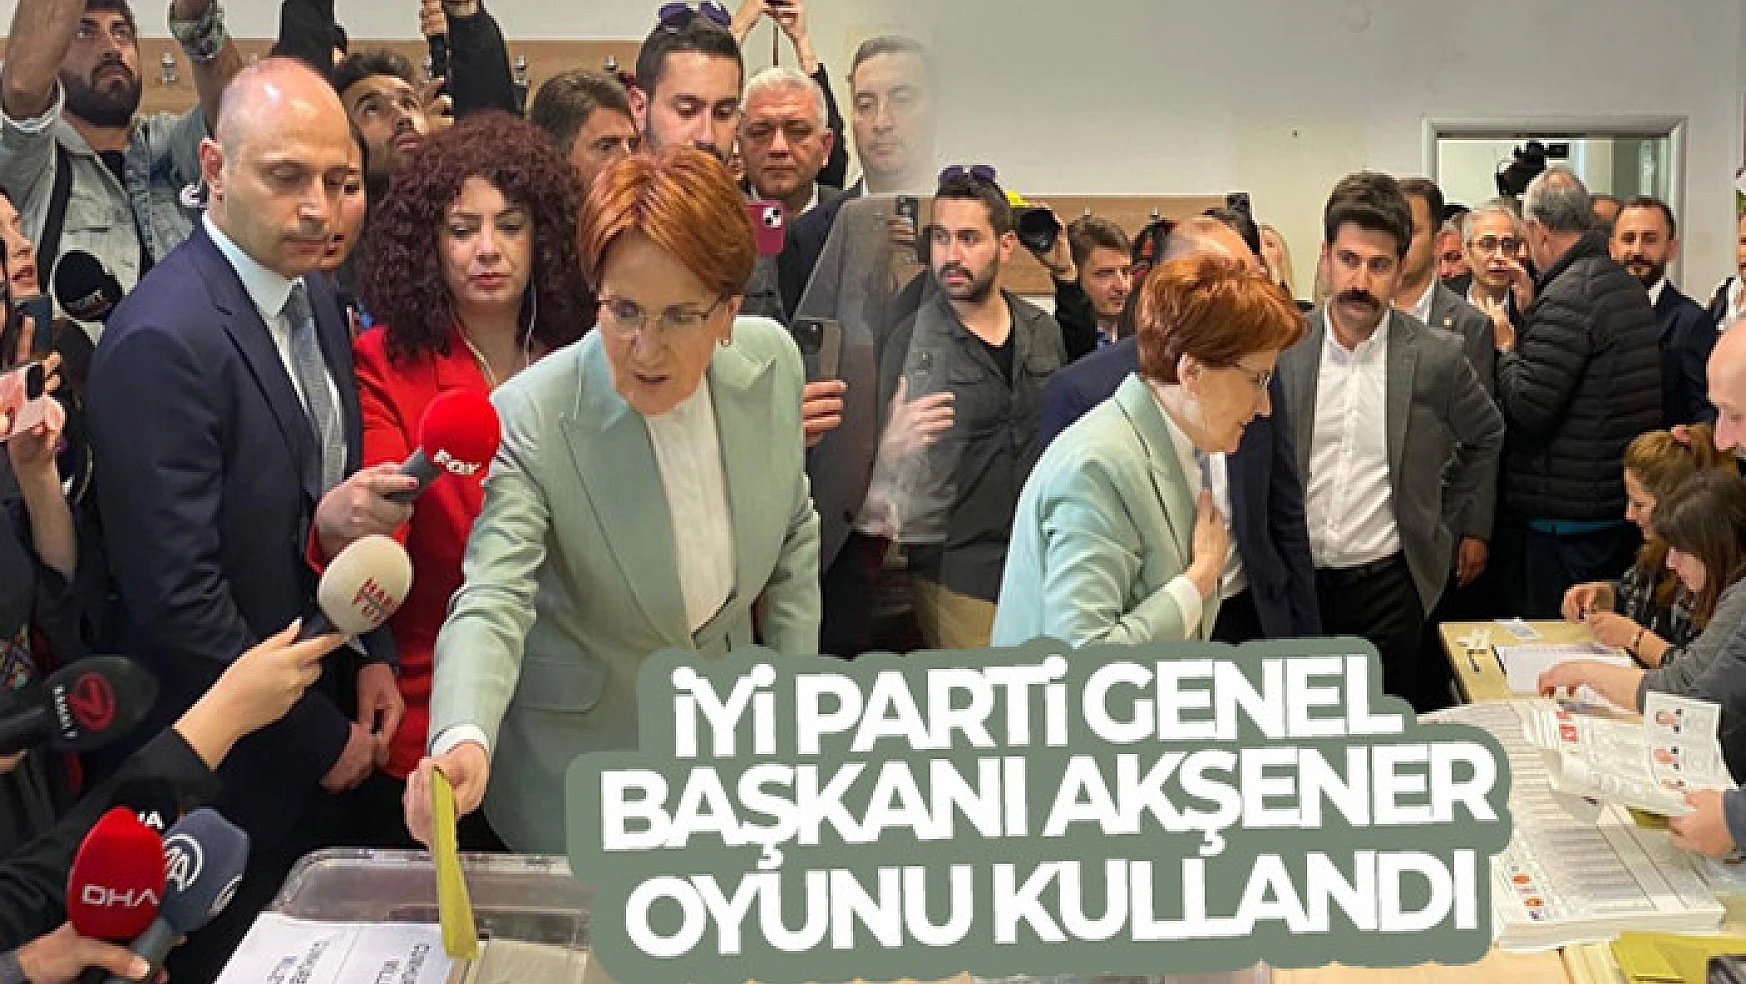 İYİ Parti Genel Başkanı Akşener, oyunu Üsküdar'da kullandı